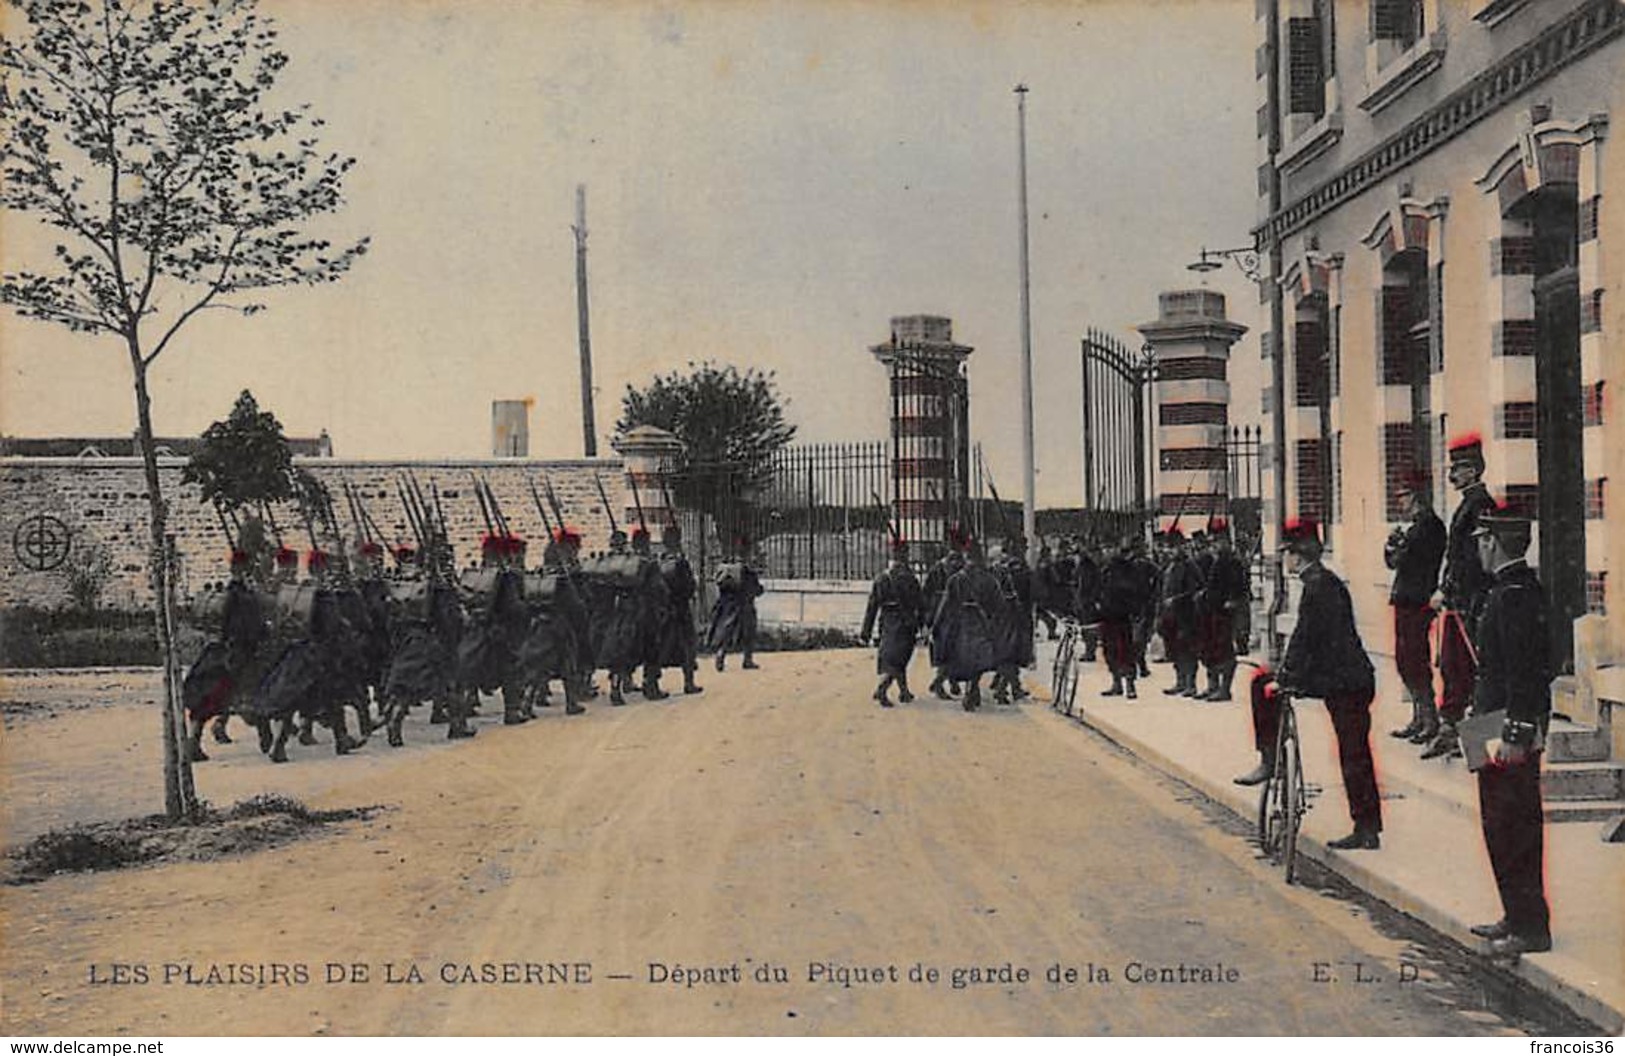 Lot de 11 CPA : La vie au Camp - Les Plaisirs de la Caserne - Soldats militaria patriotique circa 1910